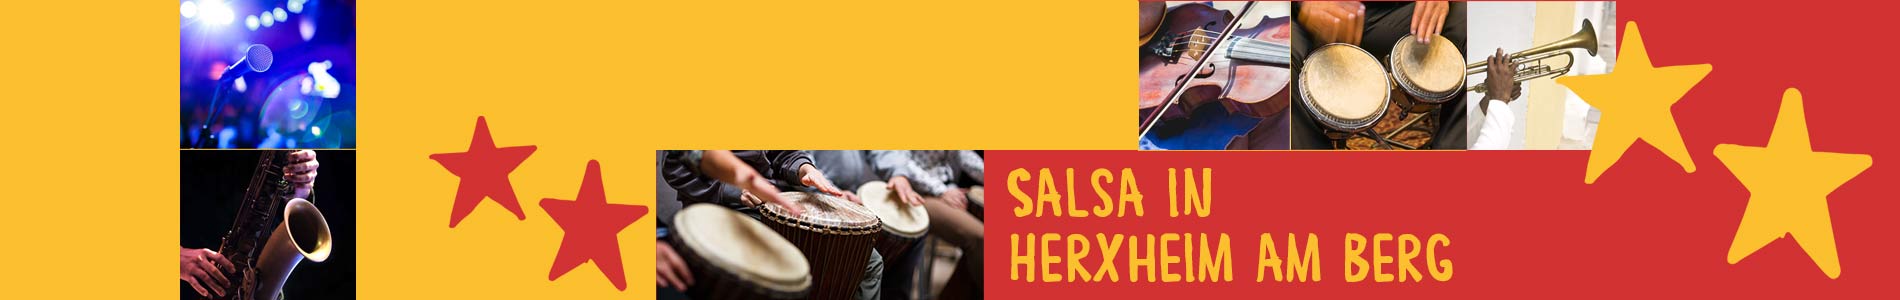 Salsa in Herxheim am Berg – Salsa lernen und tanzen, Tanzkurse, Partys, Veranstaltungen